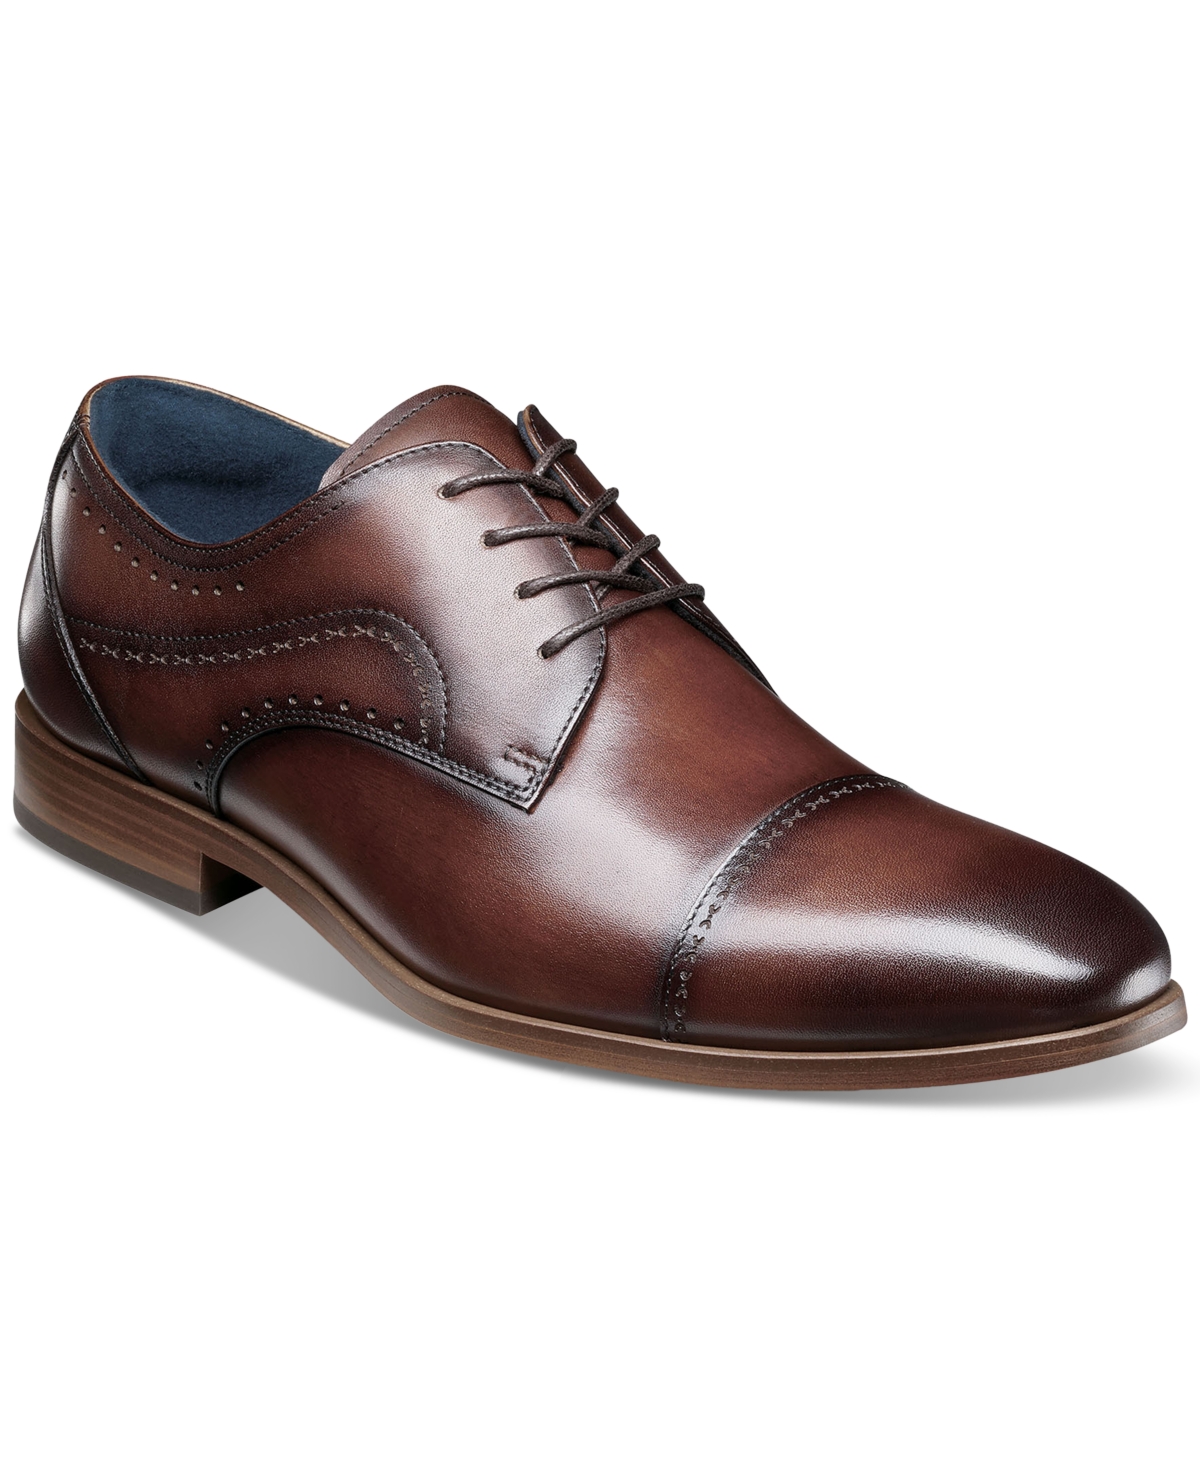 Men's Bryant Lace-Up Cap-Toe Oxford Dress Shoes - Brown